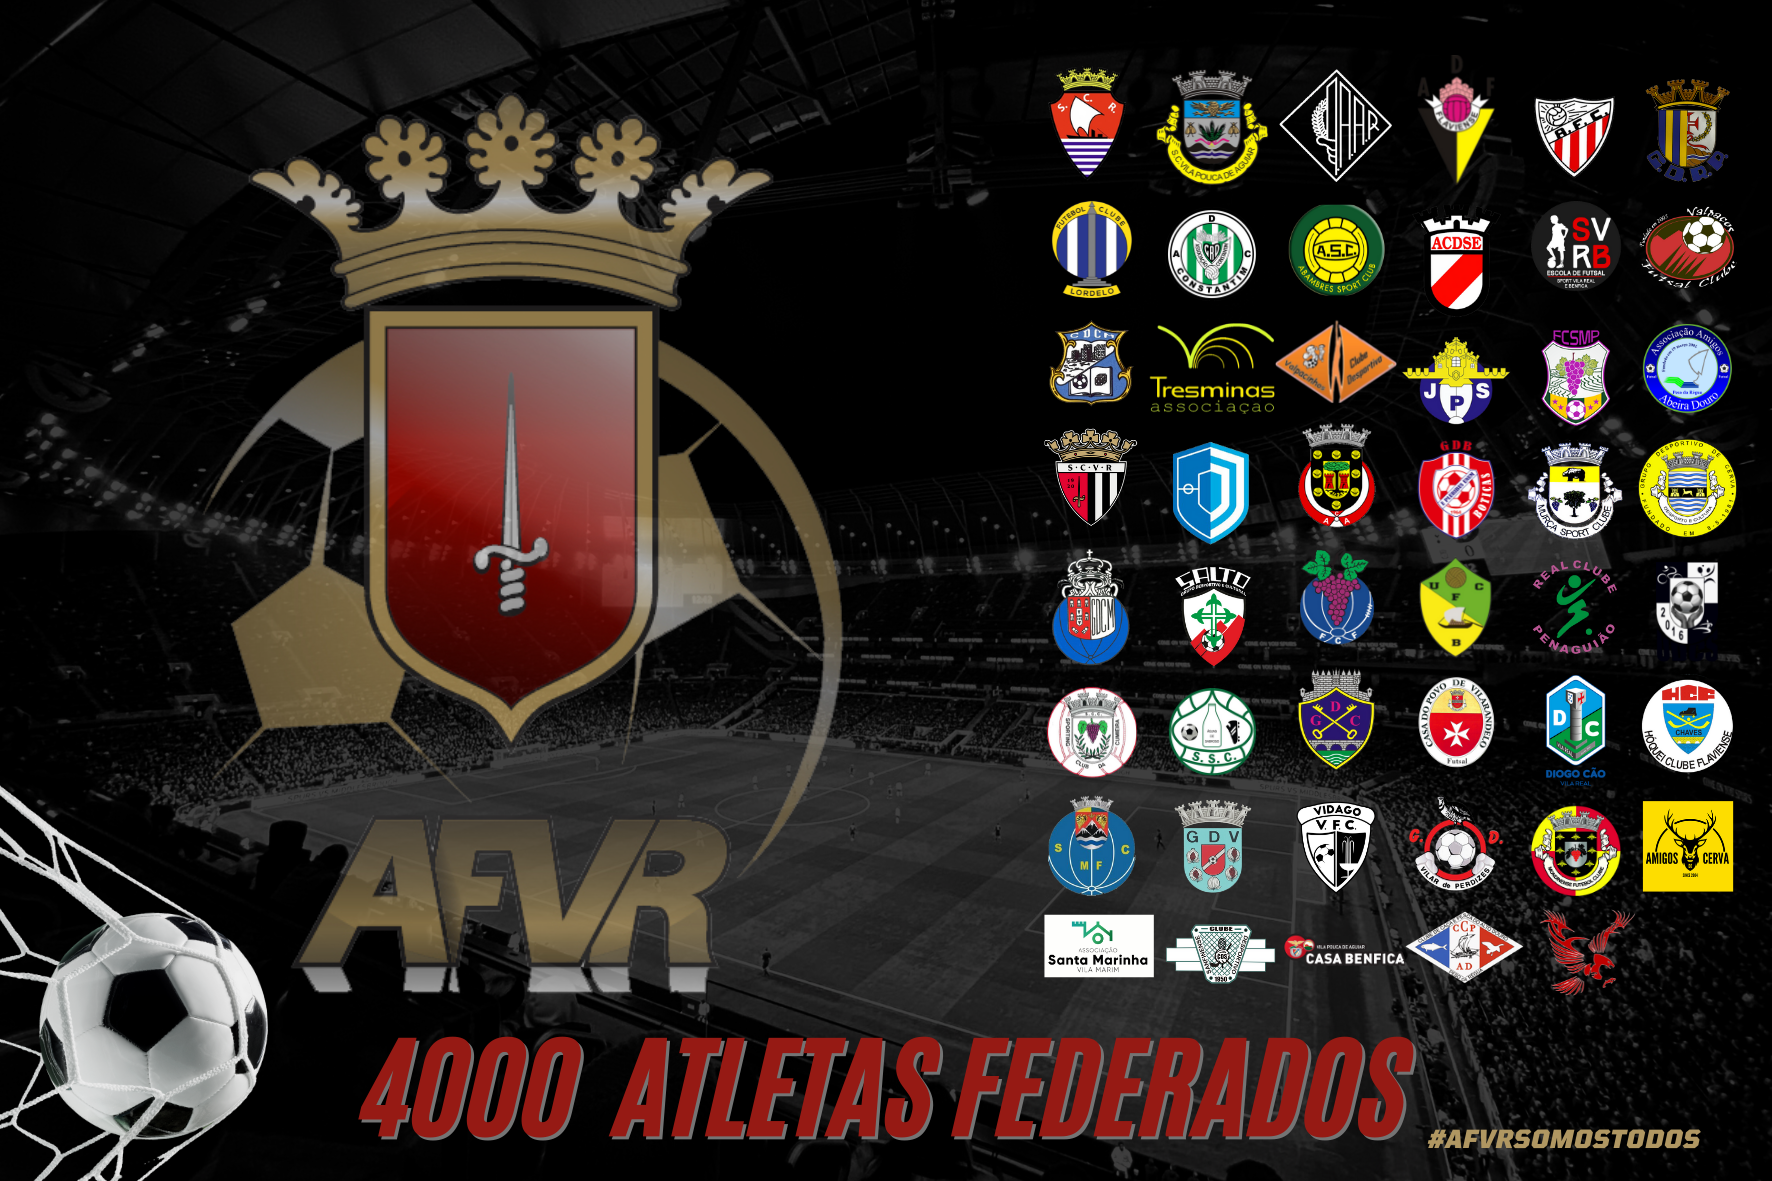 AFVR| 4000 ATLETAS FEDERADOS